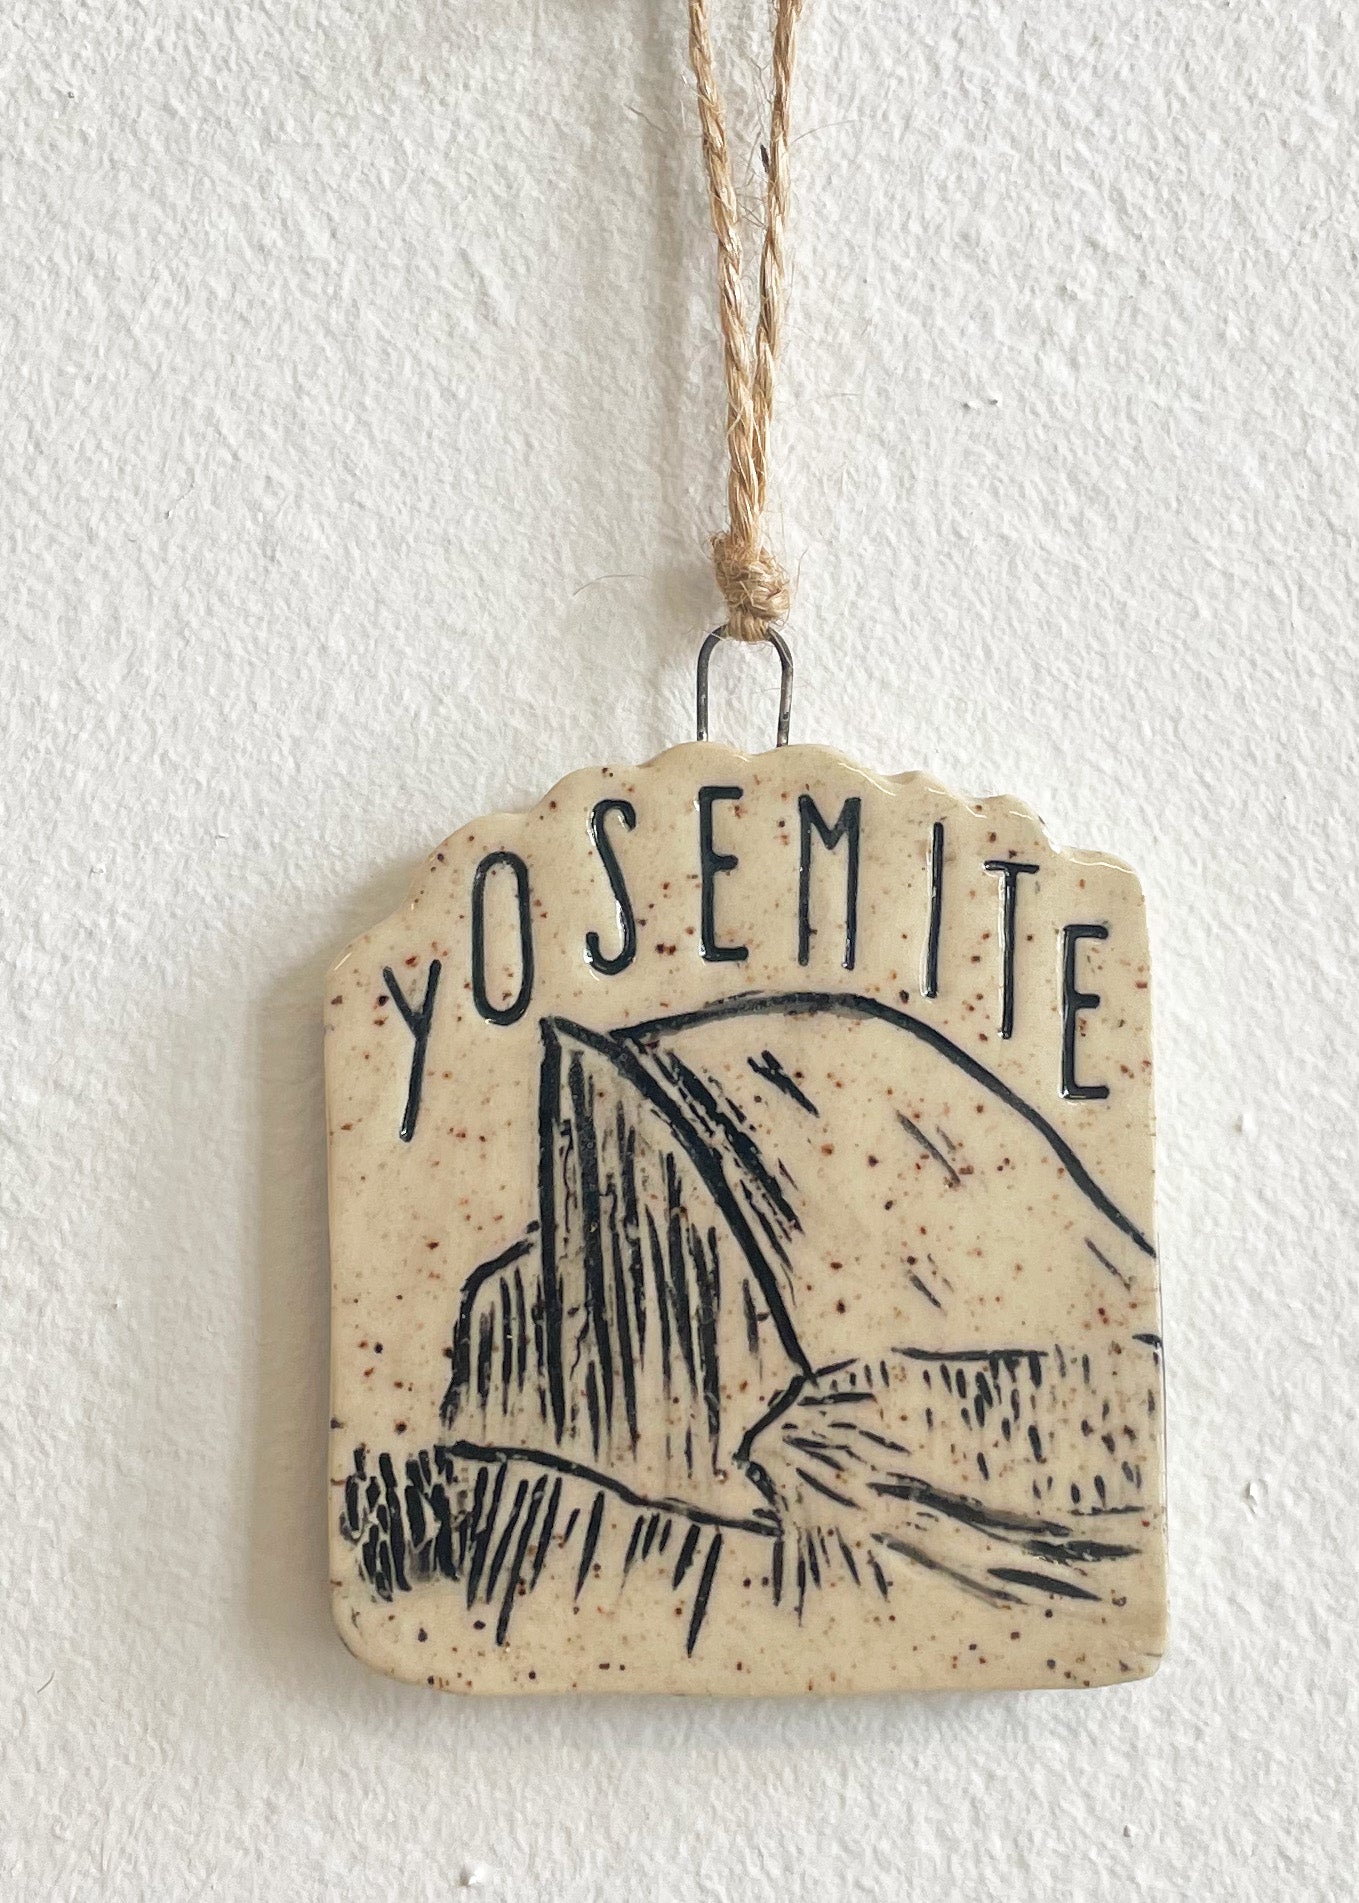 Yosemite Half Dome Ornament, No 3